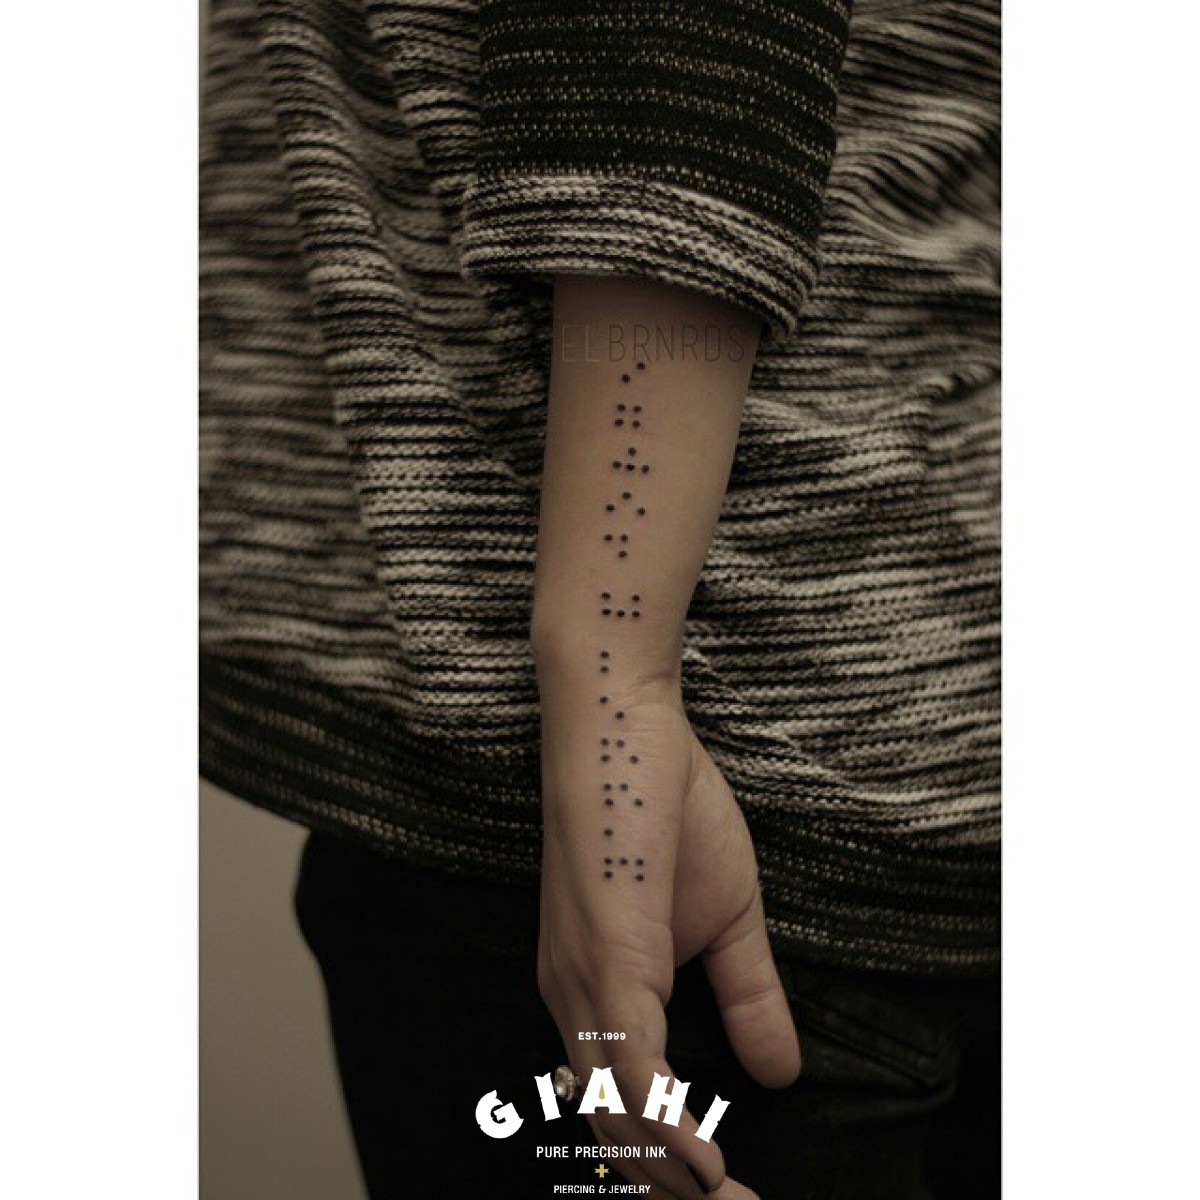 Blind Font Lettering Blackwork tattoo by Elda Bernardes